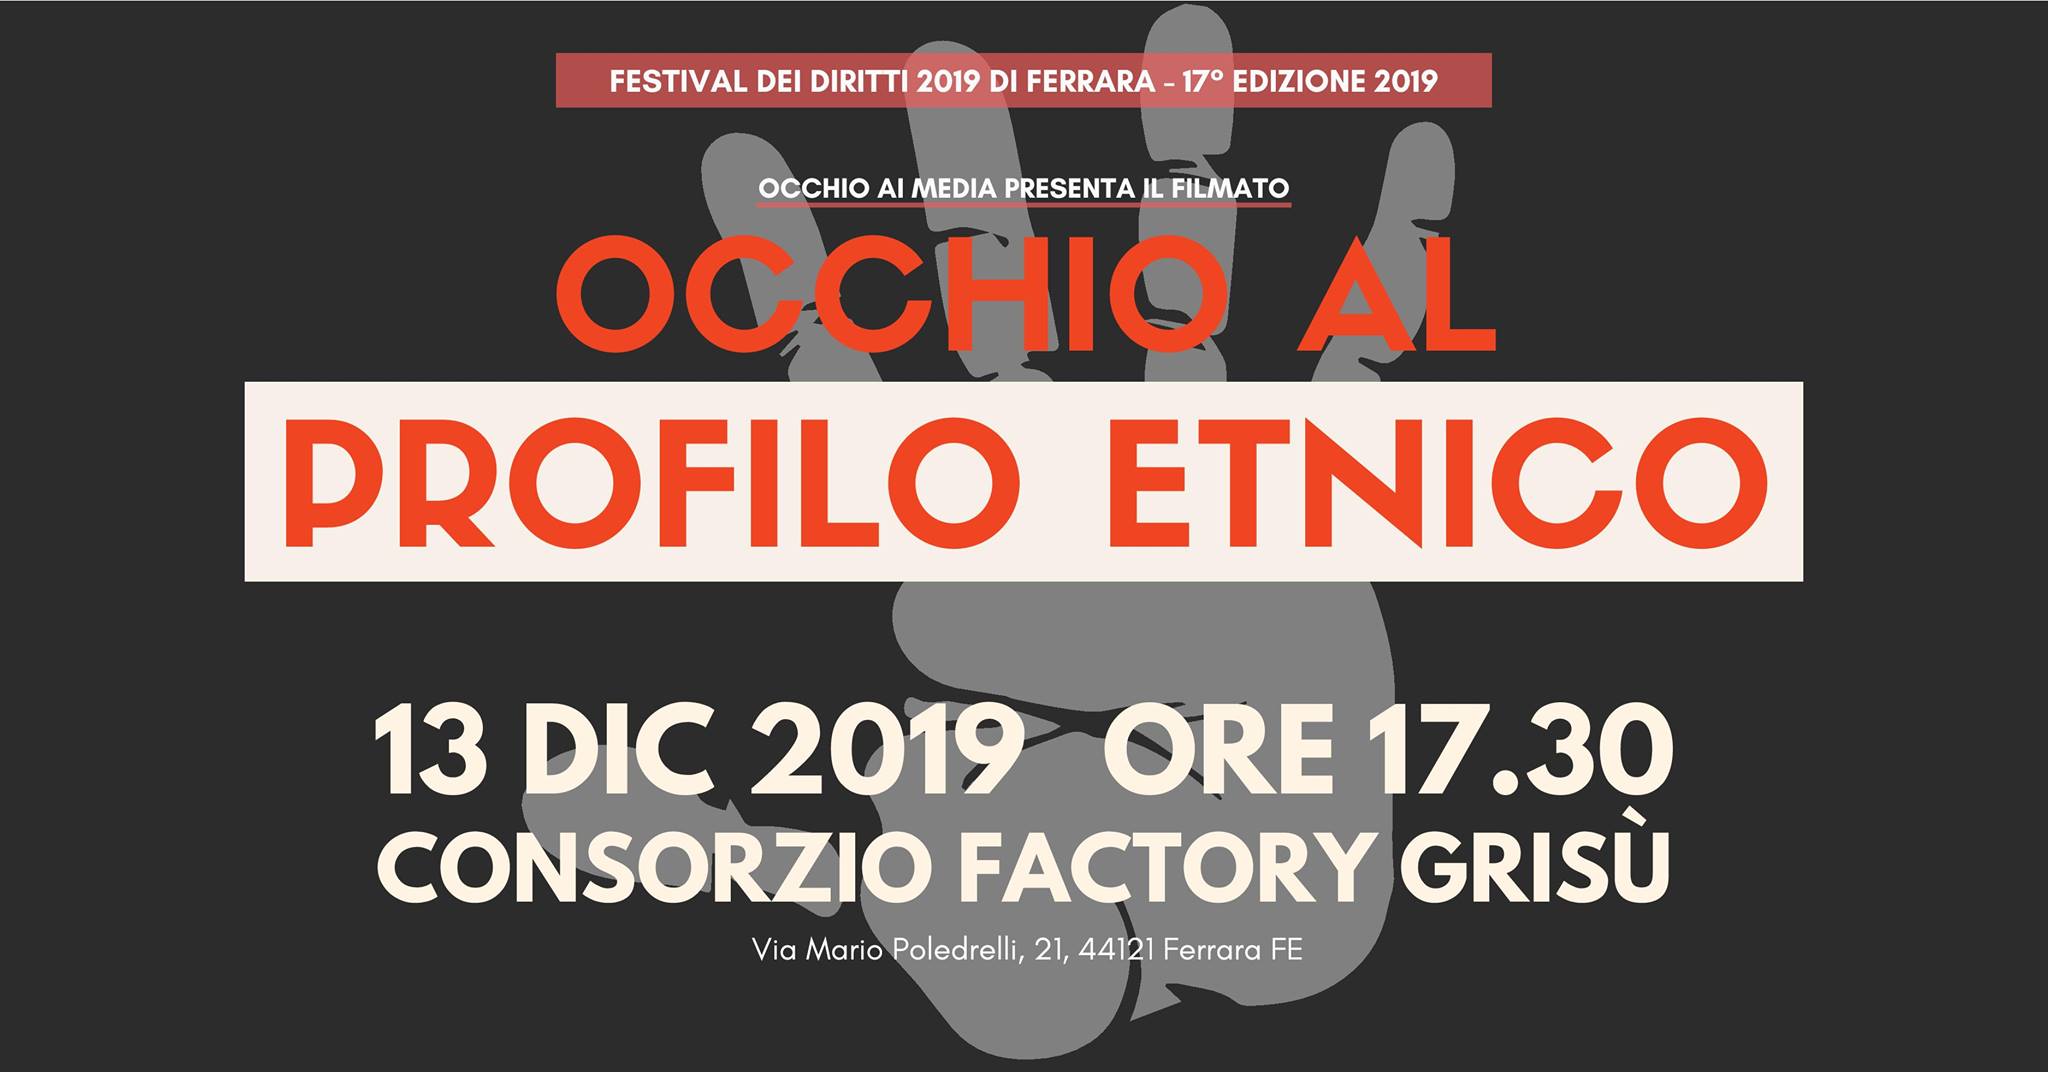 Festival Diritti Ferrara: Occhio al profilo etnico, 13/12 Factory Grisù ore 17,30